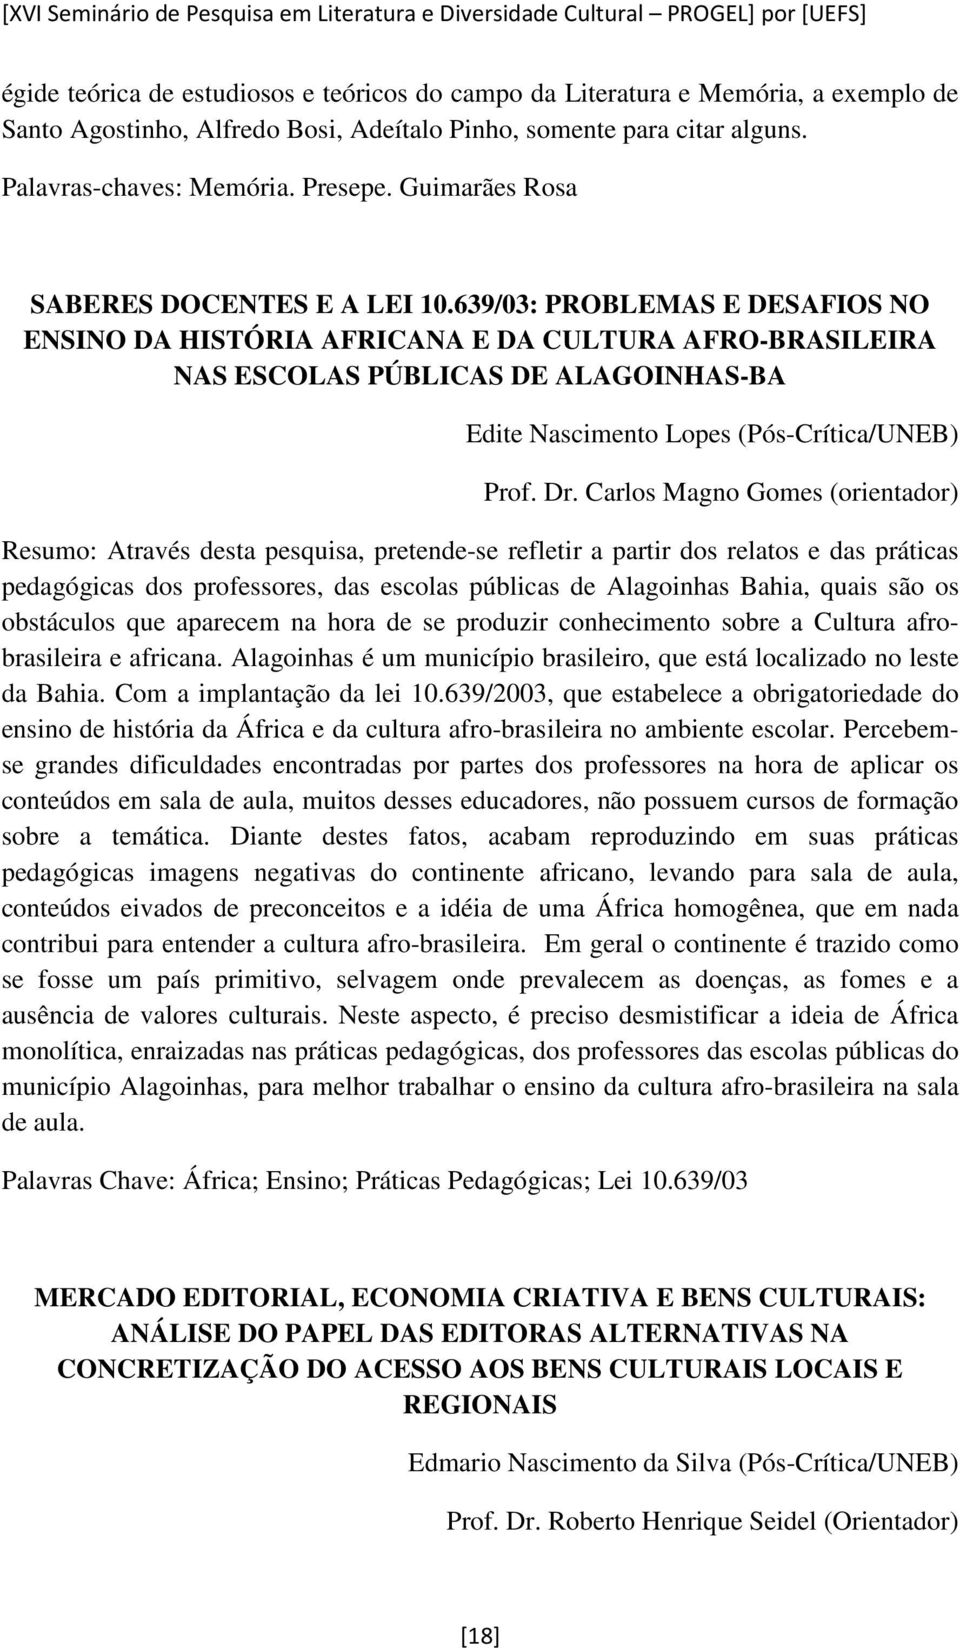 639/03: PROBLEMAS E DESAFIOS NO ENSINO DA HISTÓRIA AFRICANA E DA CULTURA AFRO-BRASILEIRA NAS ESCOLAS PÚBLICAS DE ALAGOINHAS-BA Edite Nascimento Lopes (Pós-Crítica/UNEB) Prof. Dr.